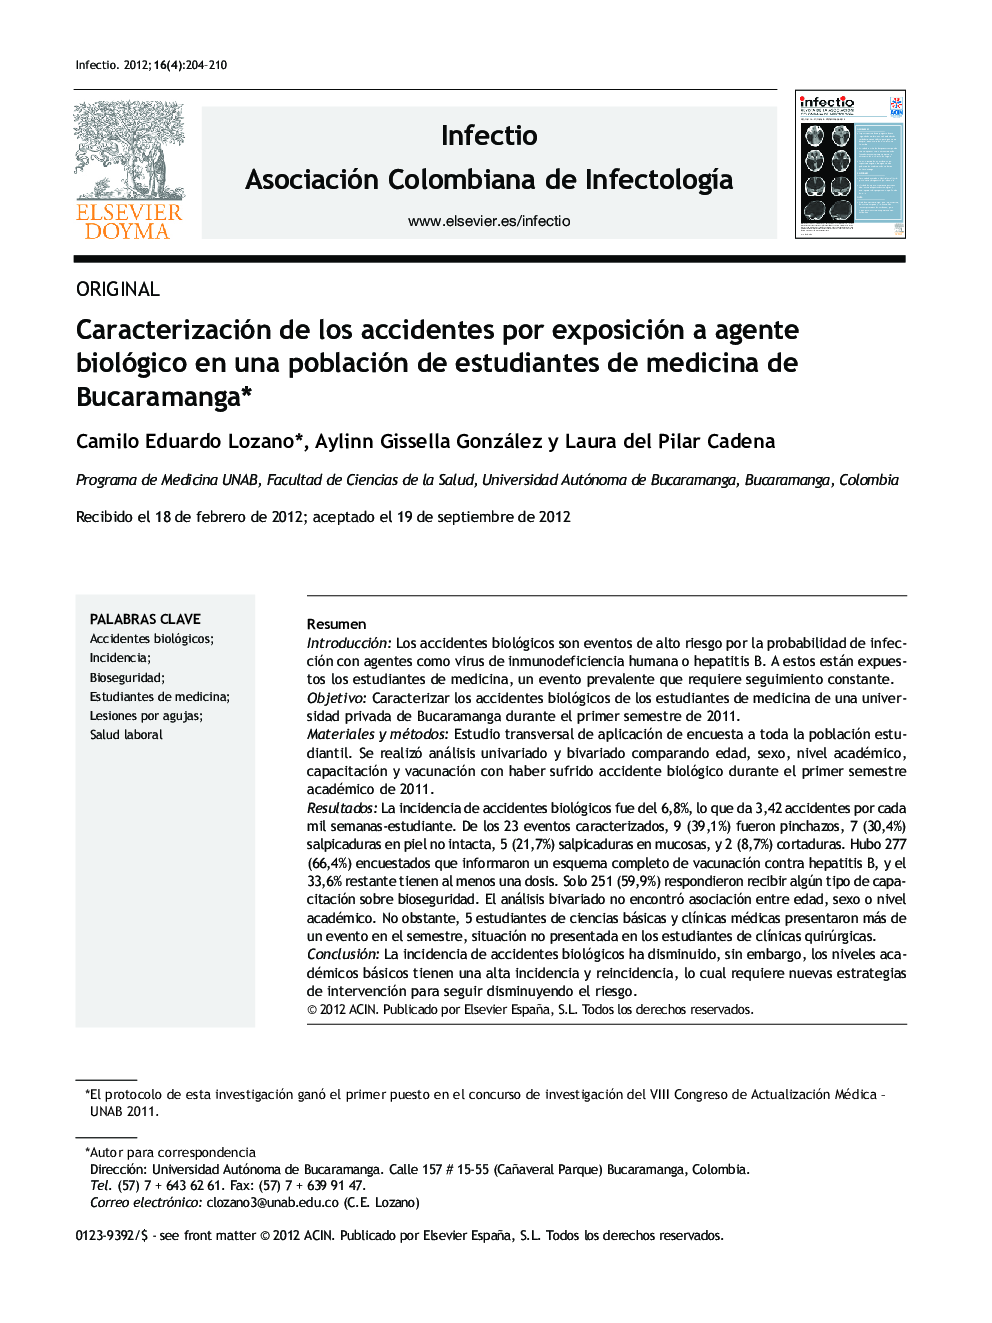 Caracterización de los accidentes por exposición a agente biológico en una población de estudiantes de medicina de Bucaramanga*